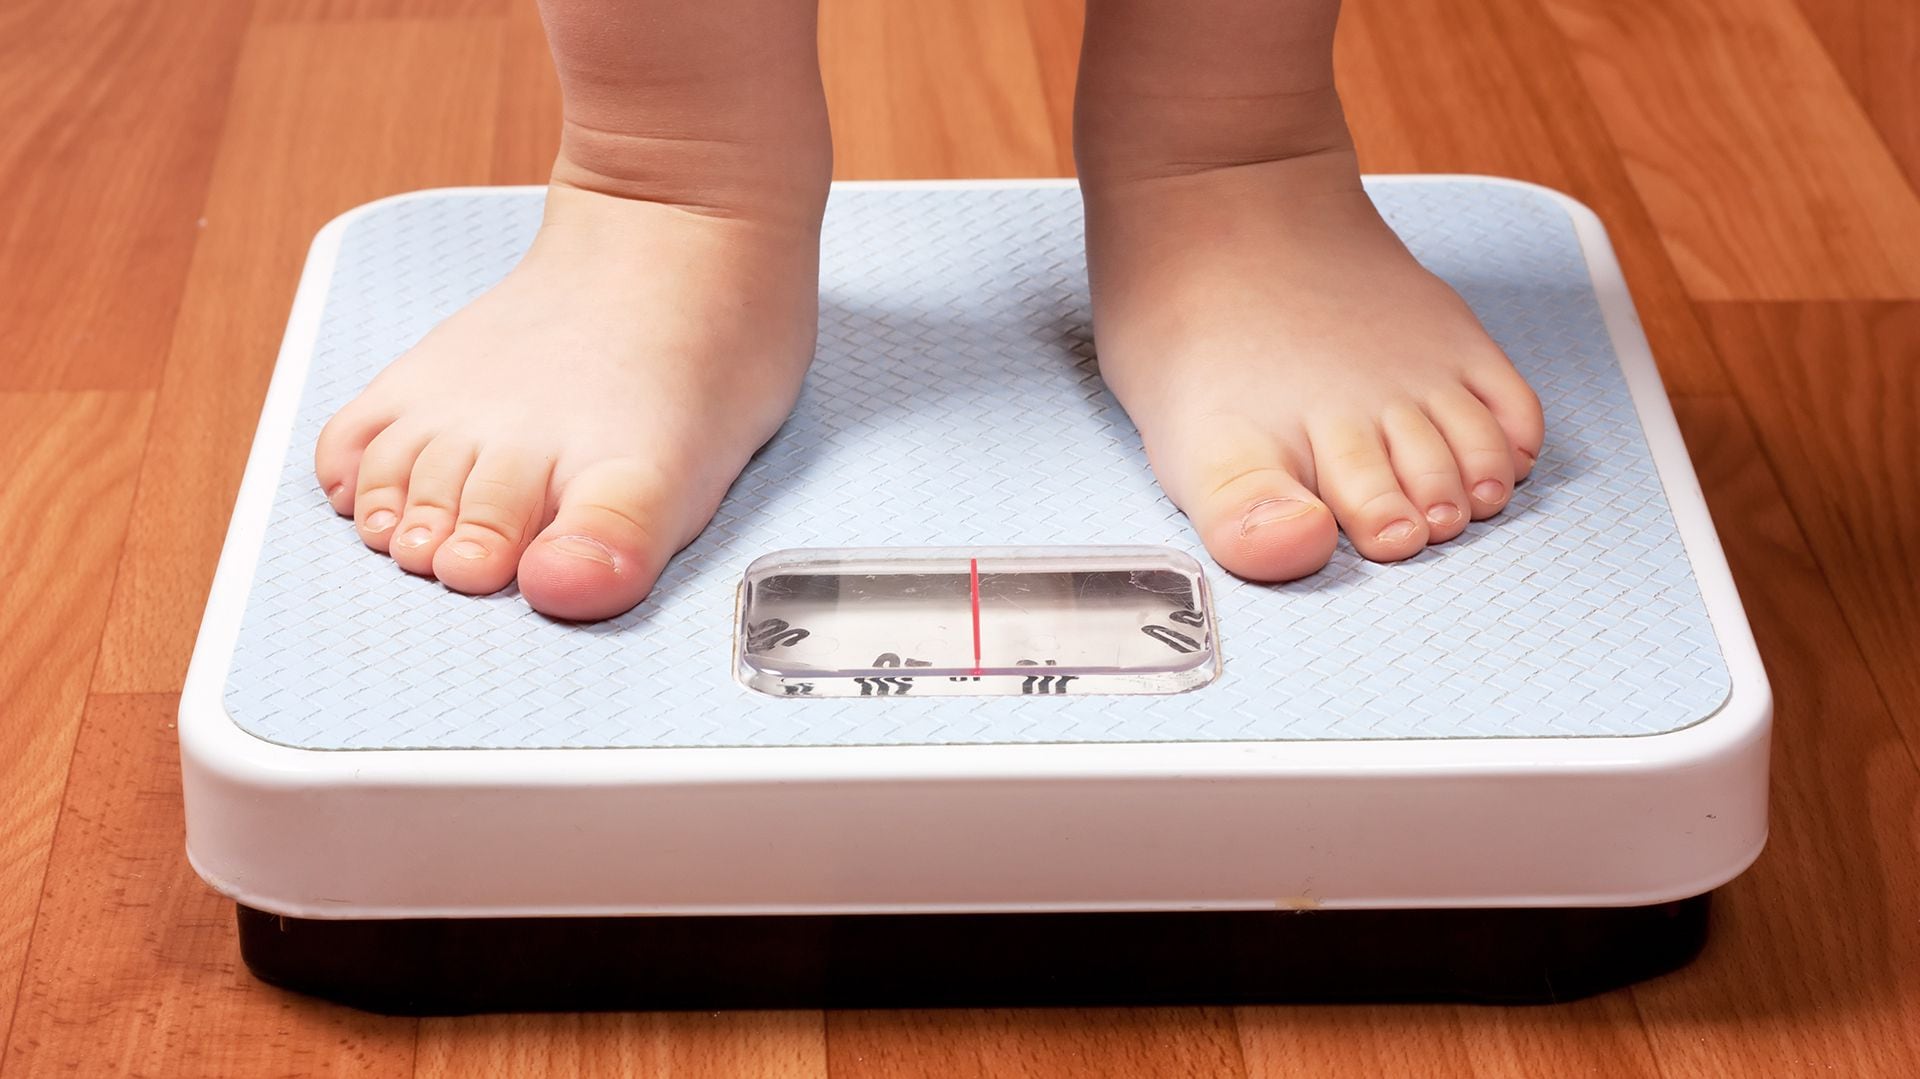 El sobrepeso y la obesidad en la infancia aumenta el riesgo de que los niños y los adolescentes desarrollen diabetes, enfermedades cardiovasculares, hipertensión arterial y algunos tipos de cáncer, y una menor esperanza de vida